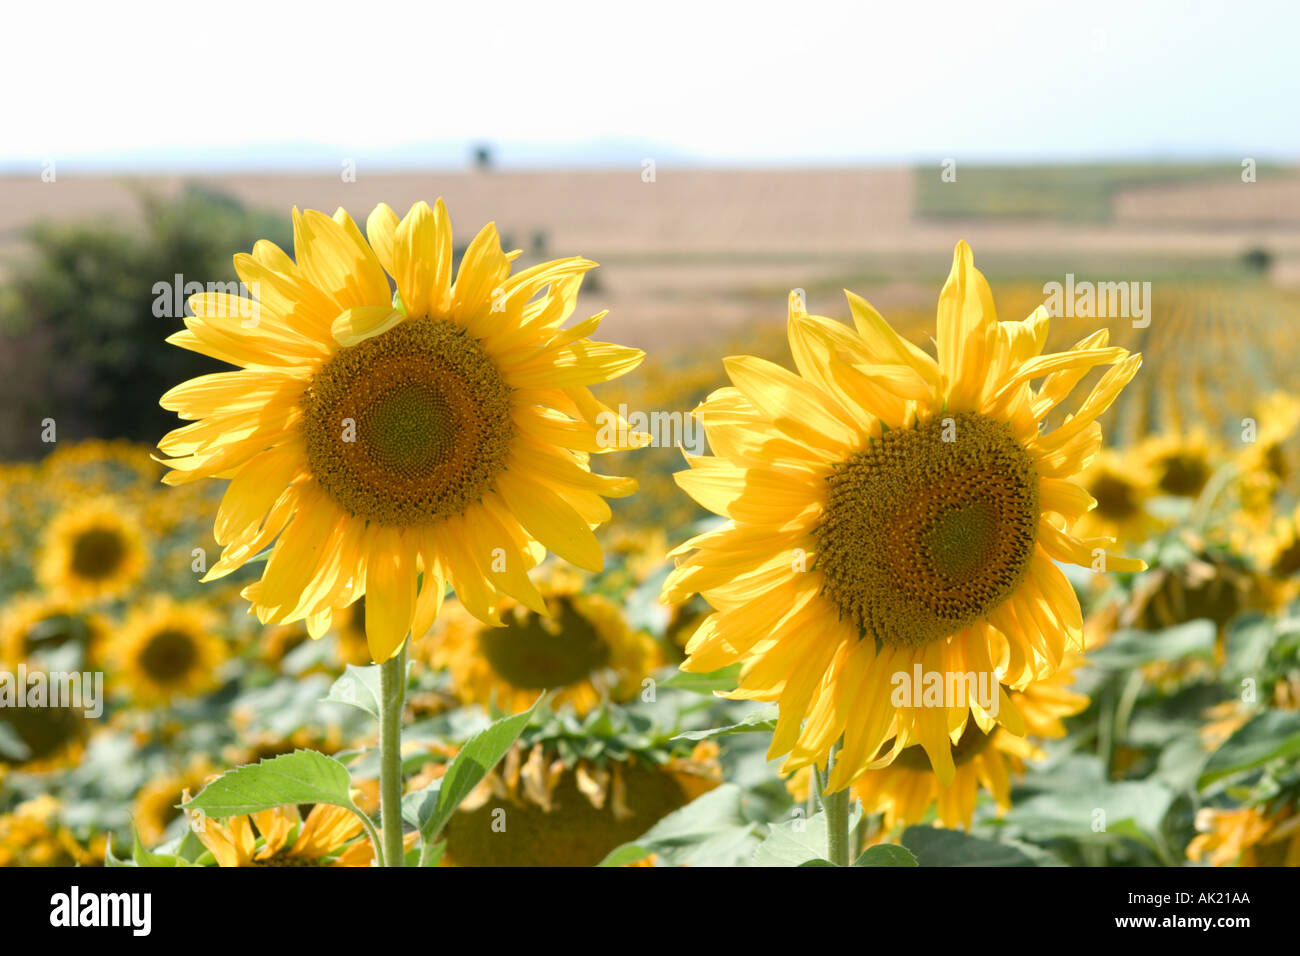 Sunflowers, Castilla y Leon, Spain Stock Photo